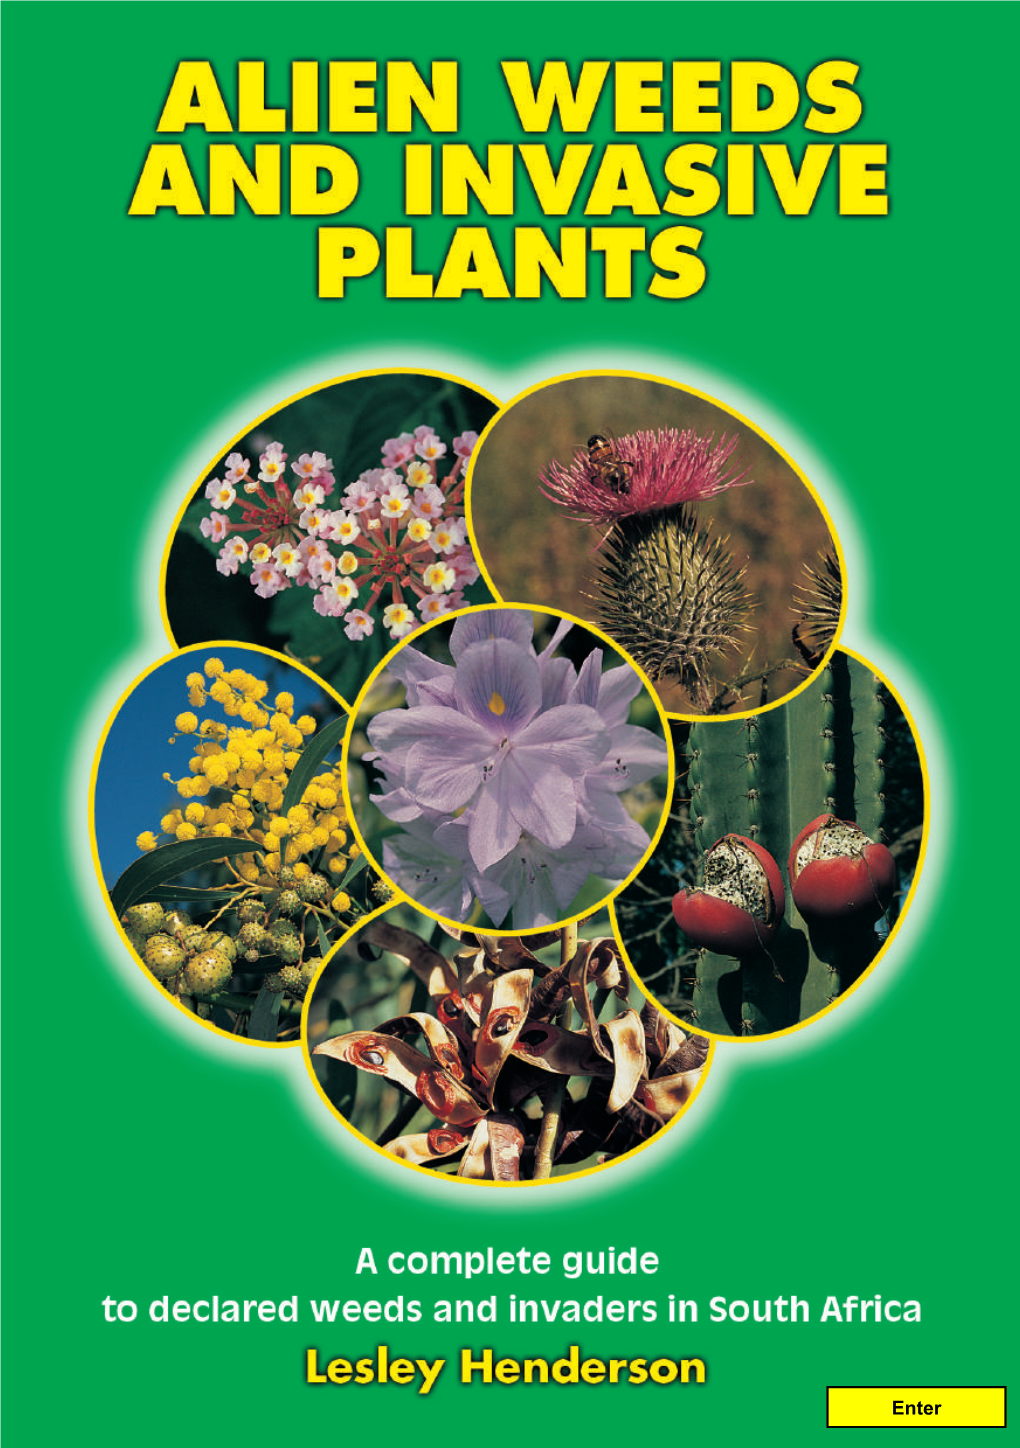 ALIEN WEEDS and INVASIVE PLANTS 234 Species of Alien Weeds and Invasive Plants in South Africa